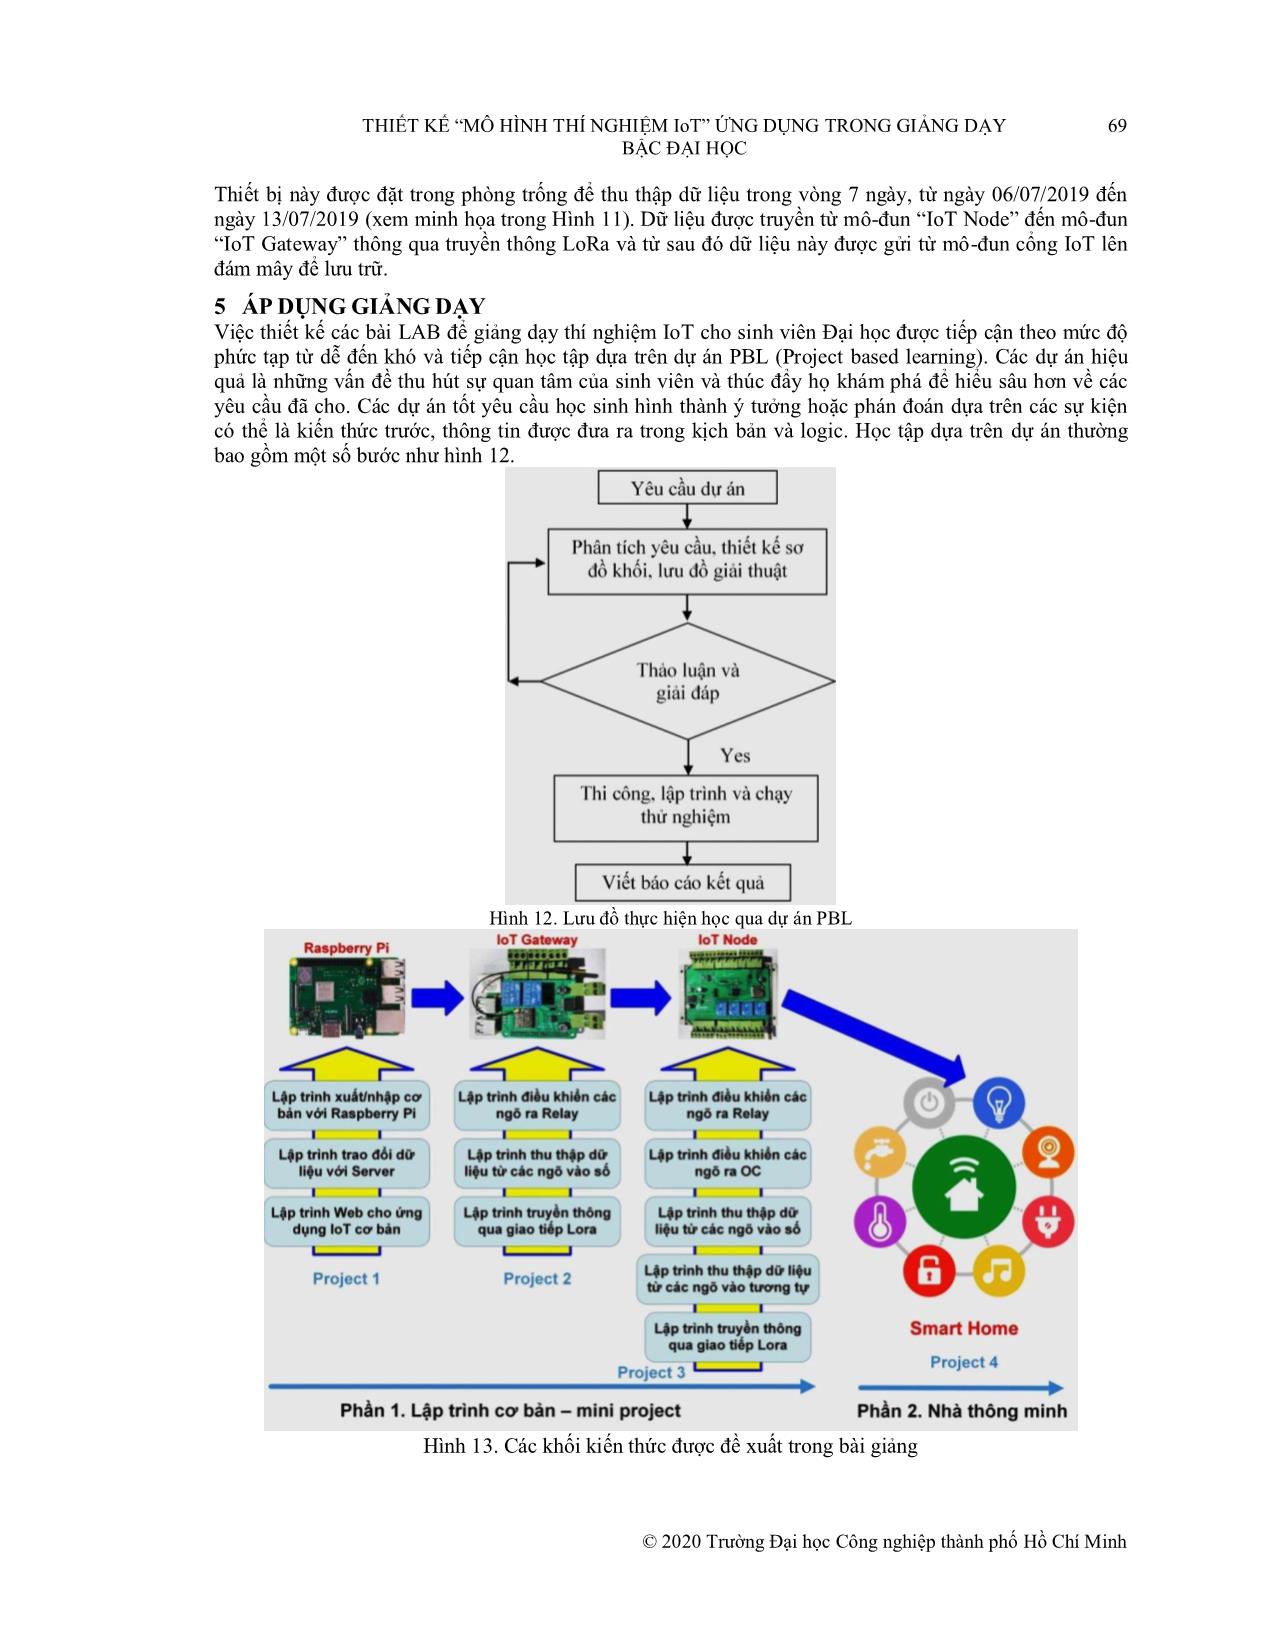 Thiết kế “Mô hình thí nghiệm IoT” ứng dụng trong giảng dạy bậc Đại học trang 10